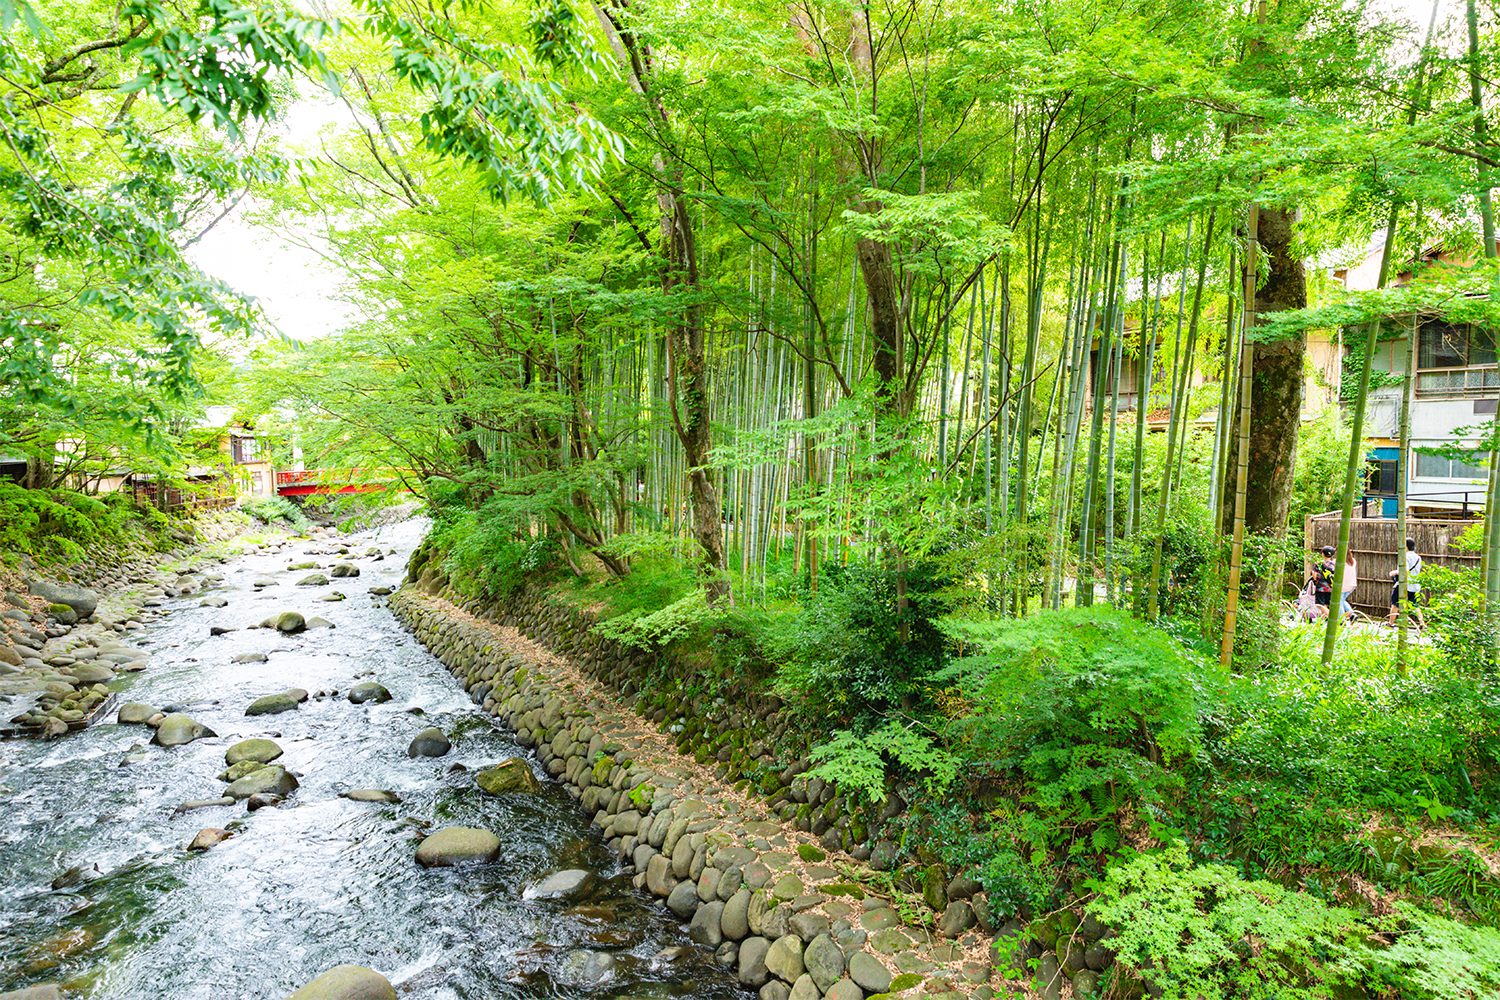 筥湯の前の川沿いを西に行くと、竹林の小径という散策路がある。風呂上がりにぴったりの涼が得られる